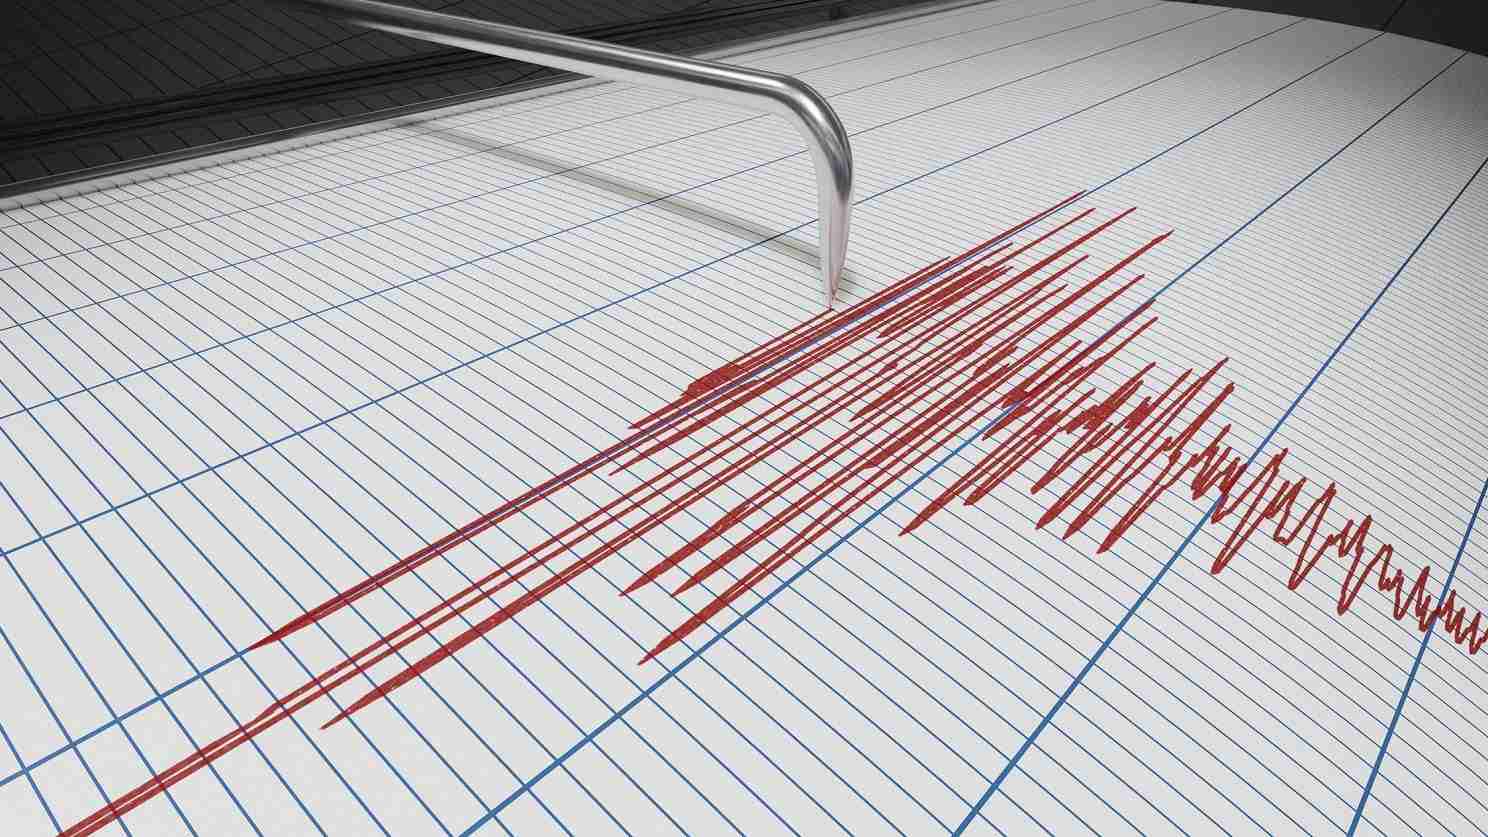 Terremoto di magnitudo 4.0 nel catanese